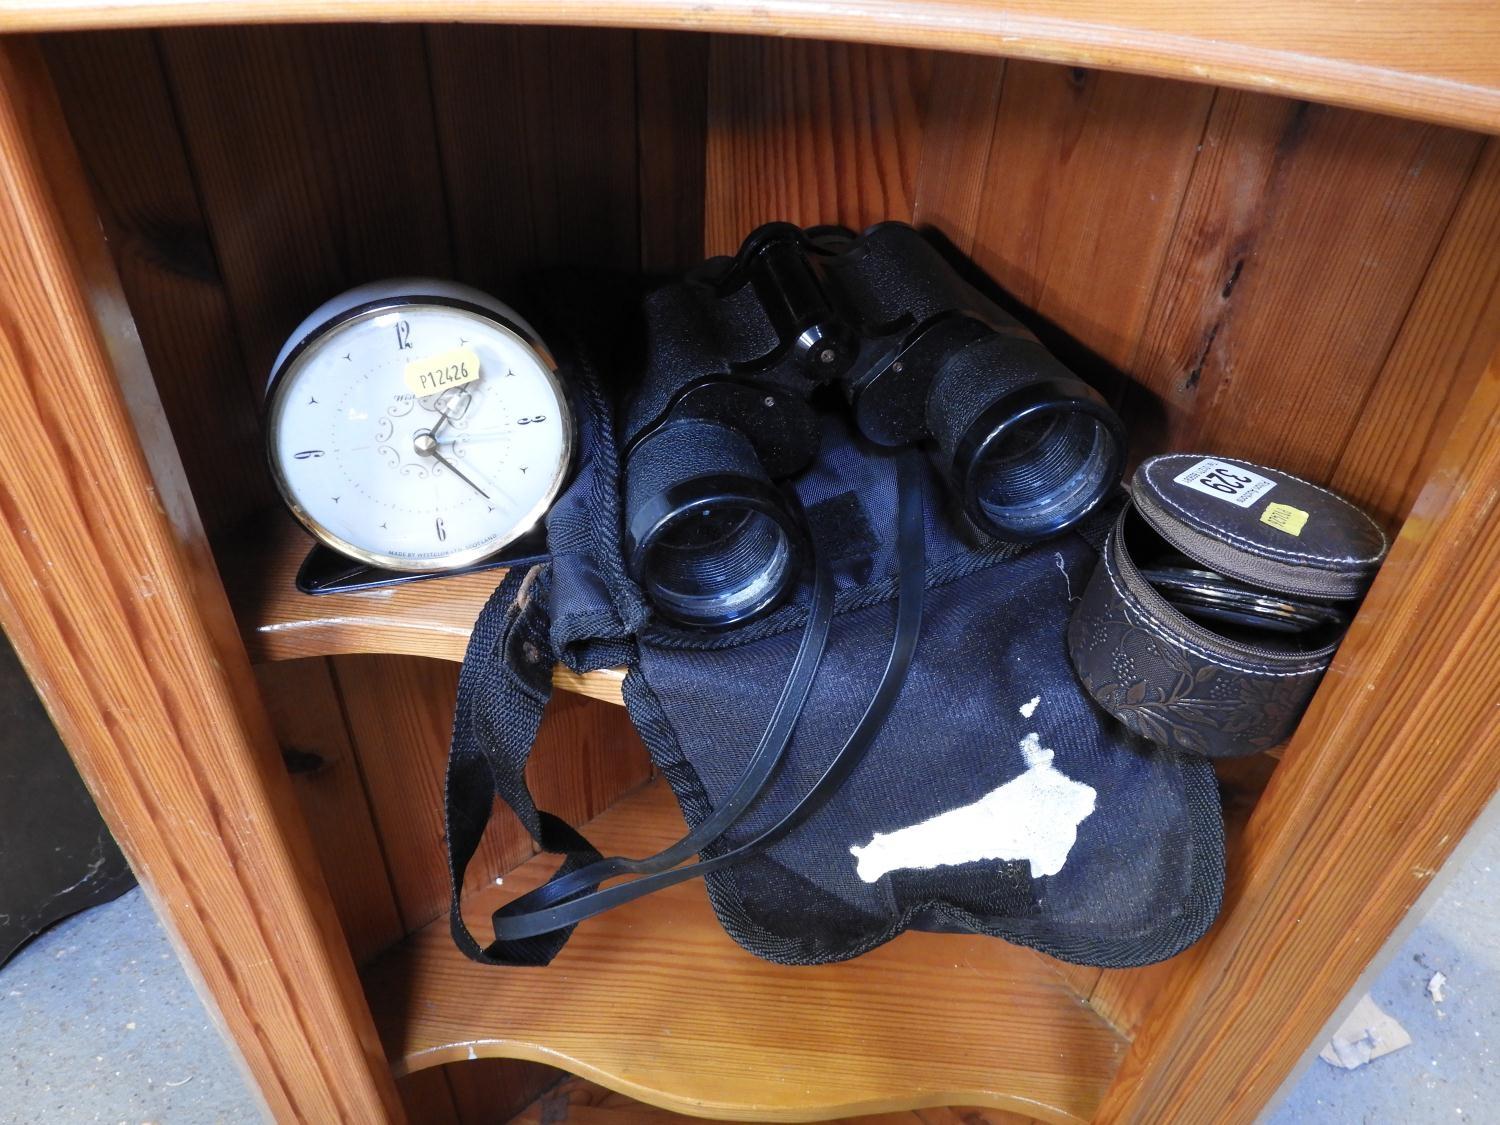 Alarm Clock, Travelling Clock and Pair of Binoculars